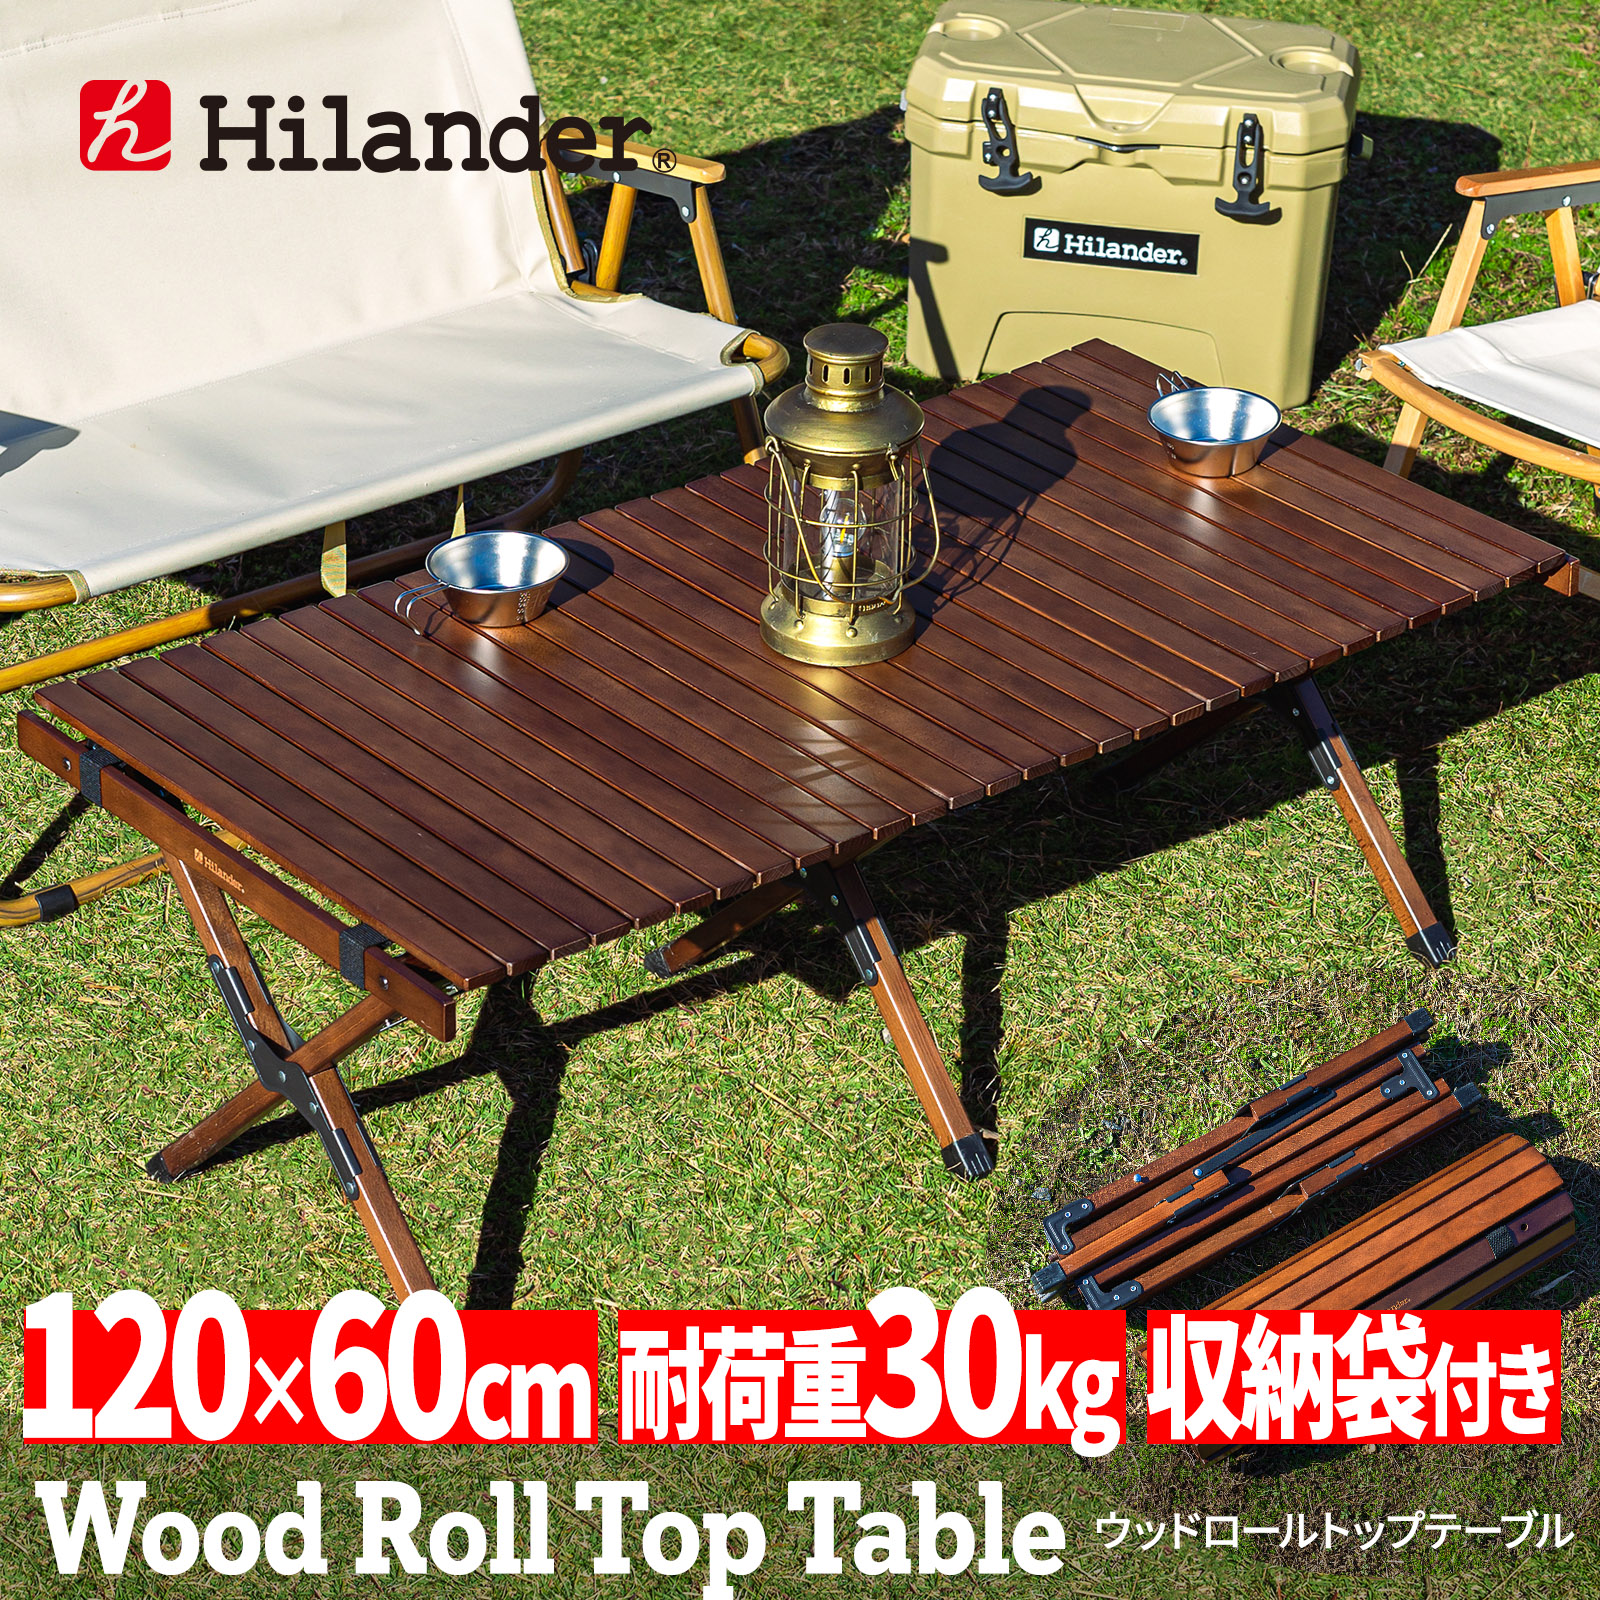 アウトドアテーブル Hilander チープ ハイランダー ウッドロールトップテーブル HCA0222 120 期間限定の激安セール ダークブラウン